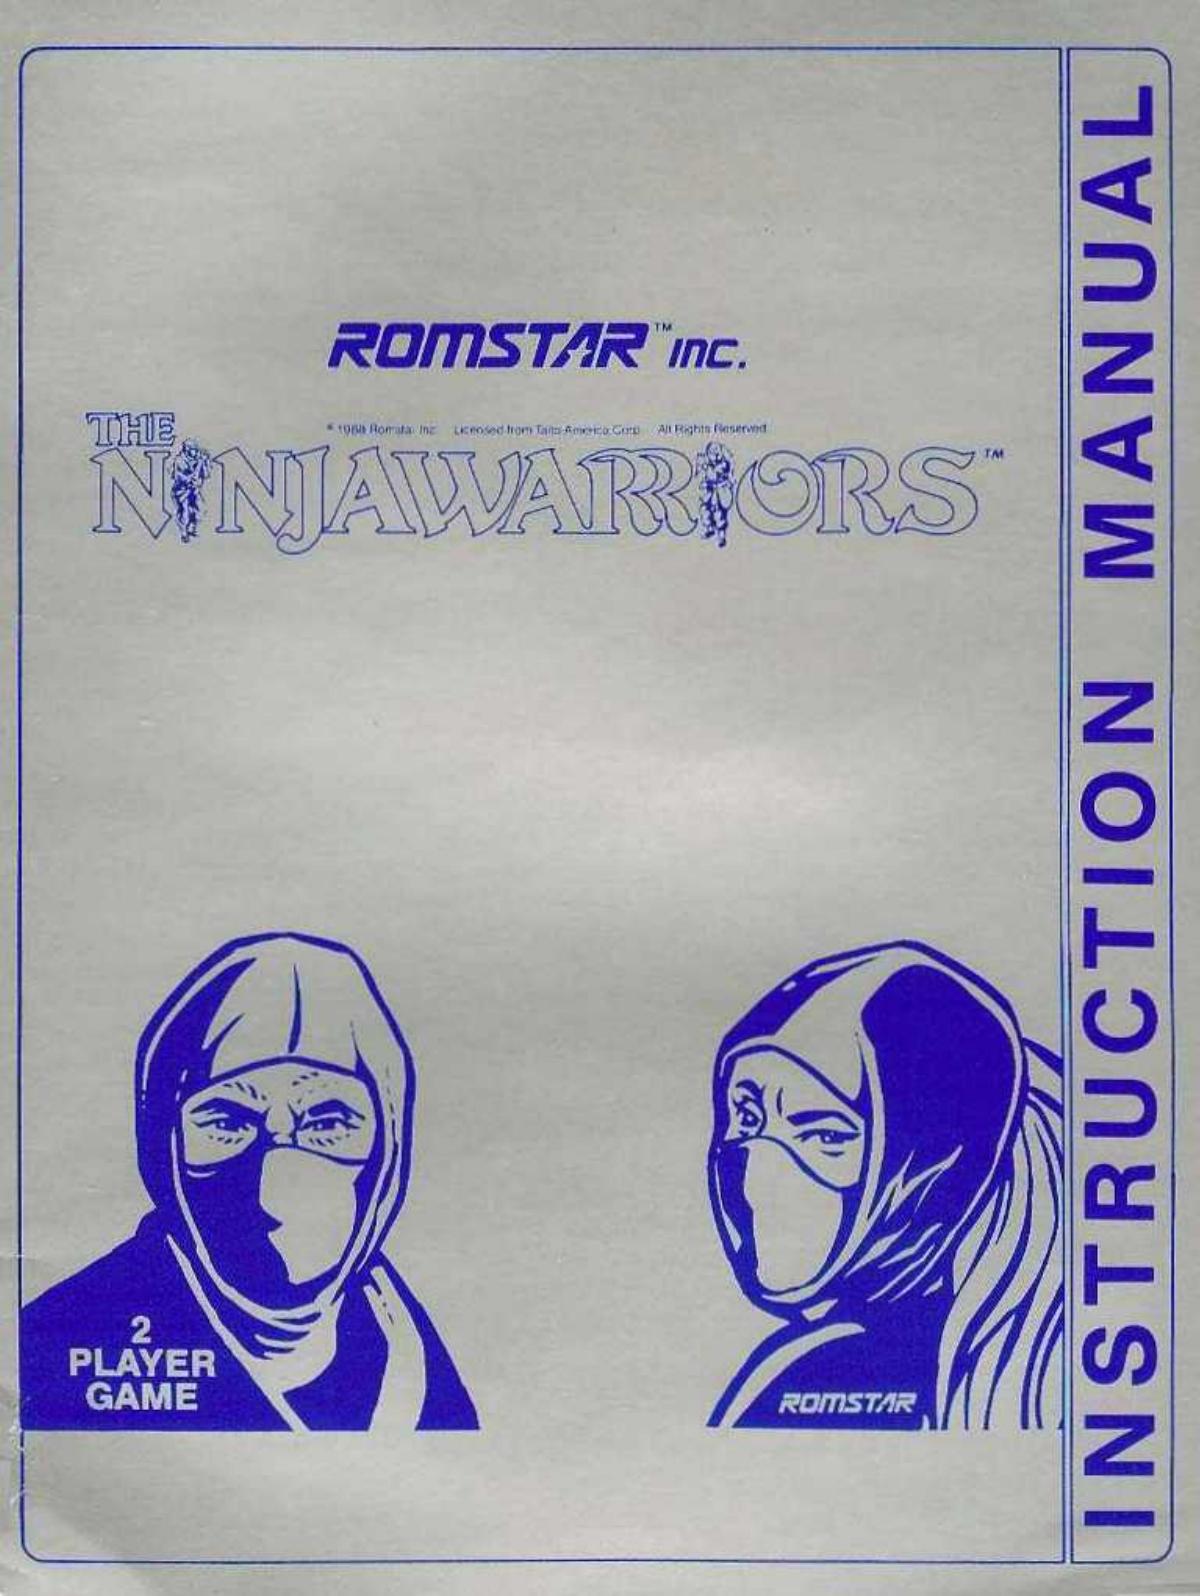 The Ninja Warriors Instruction Manual